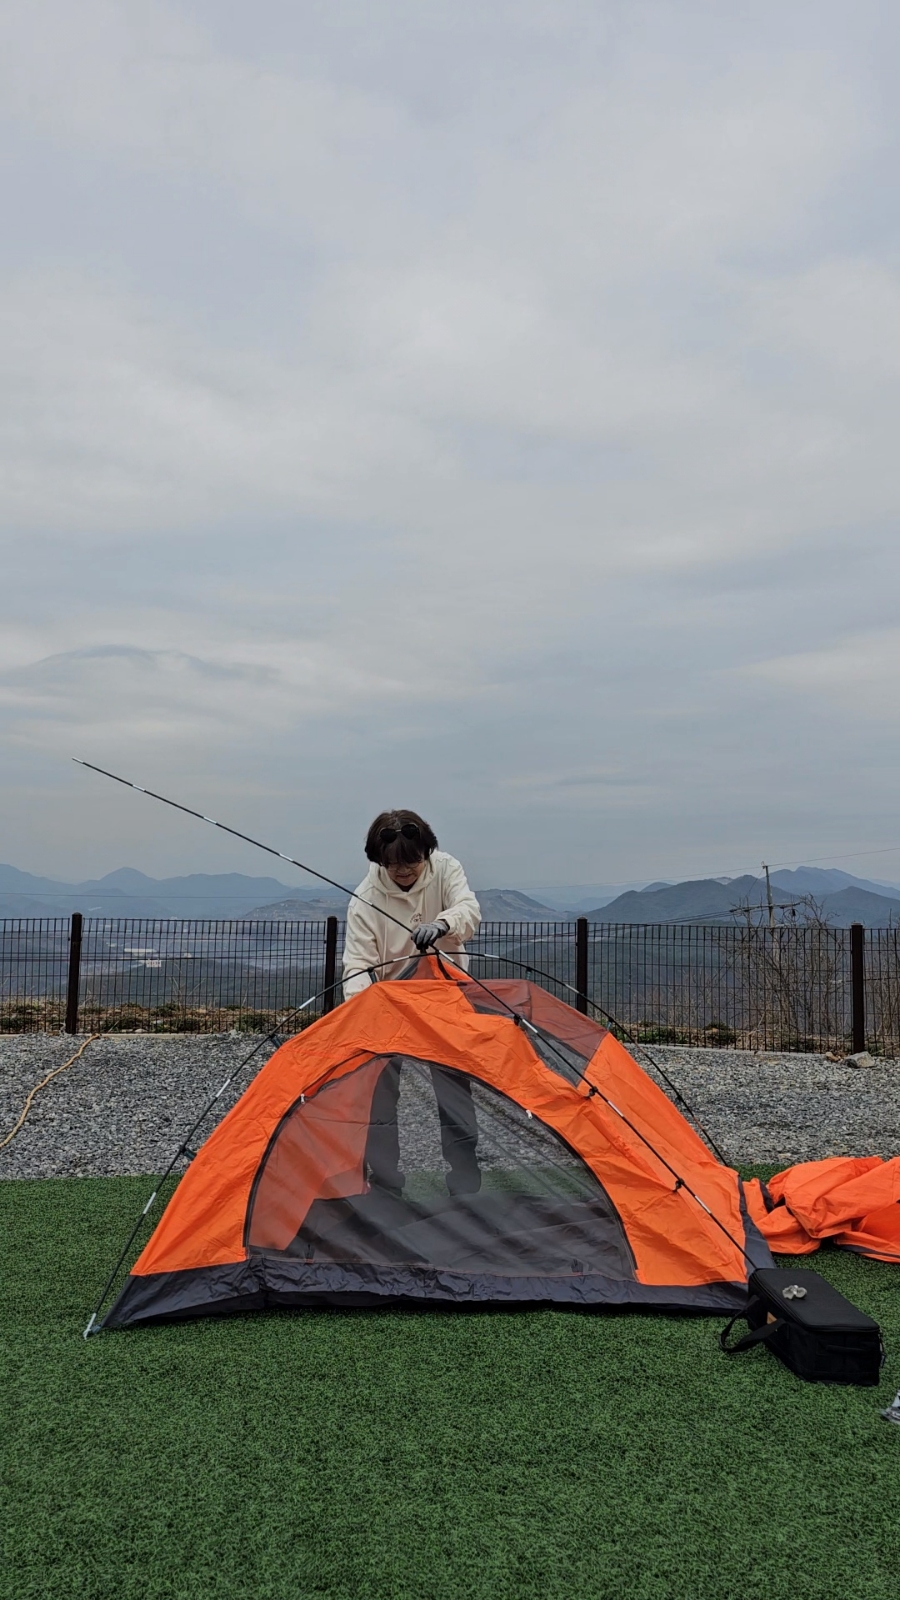 초보 캠핑 용품 치기 쉬운 입문용 경량 텐트 피칭 2인용 치는 법